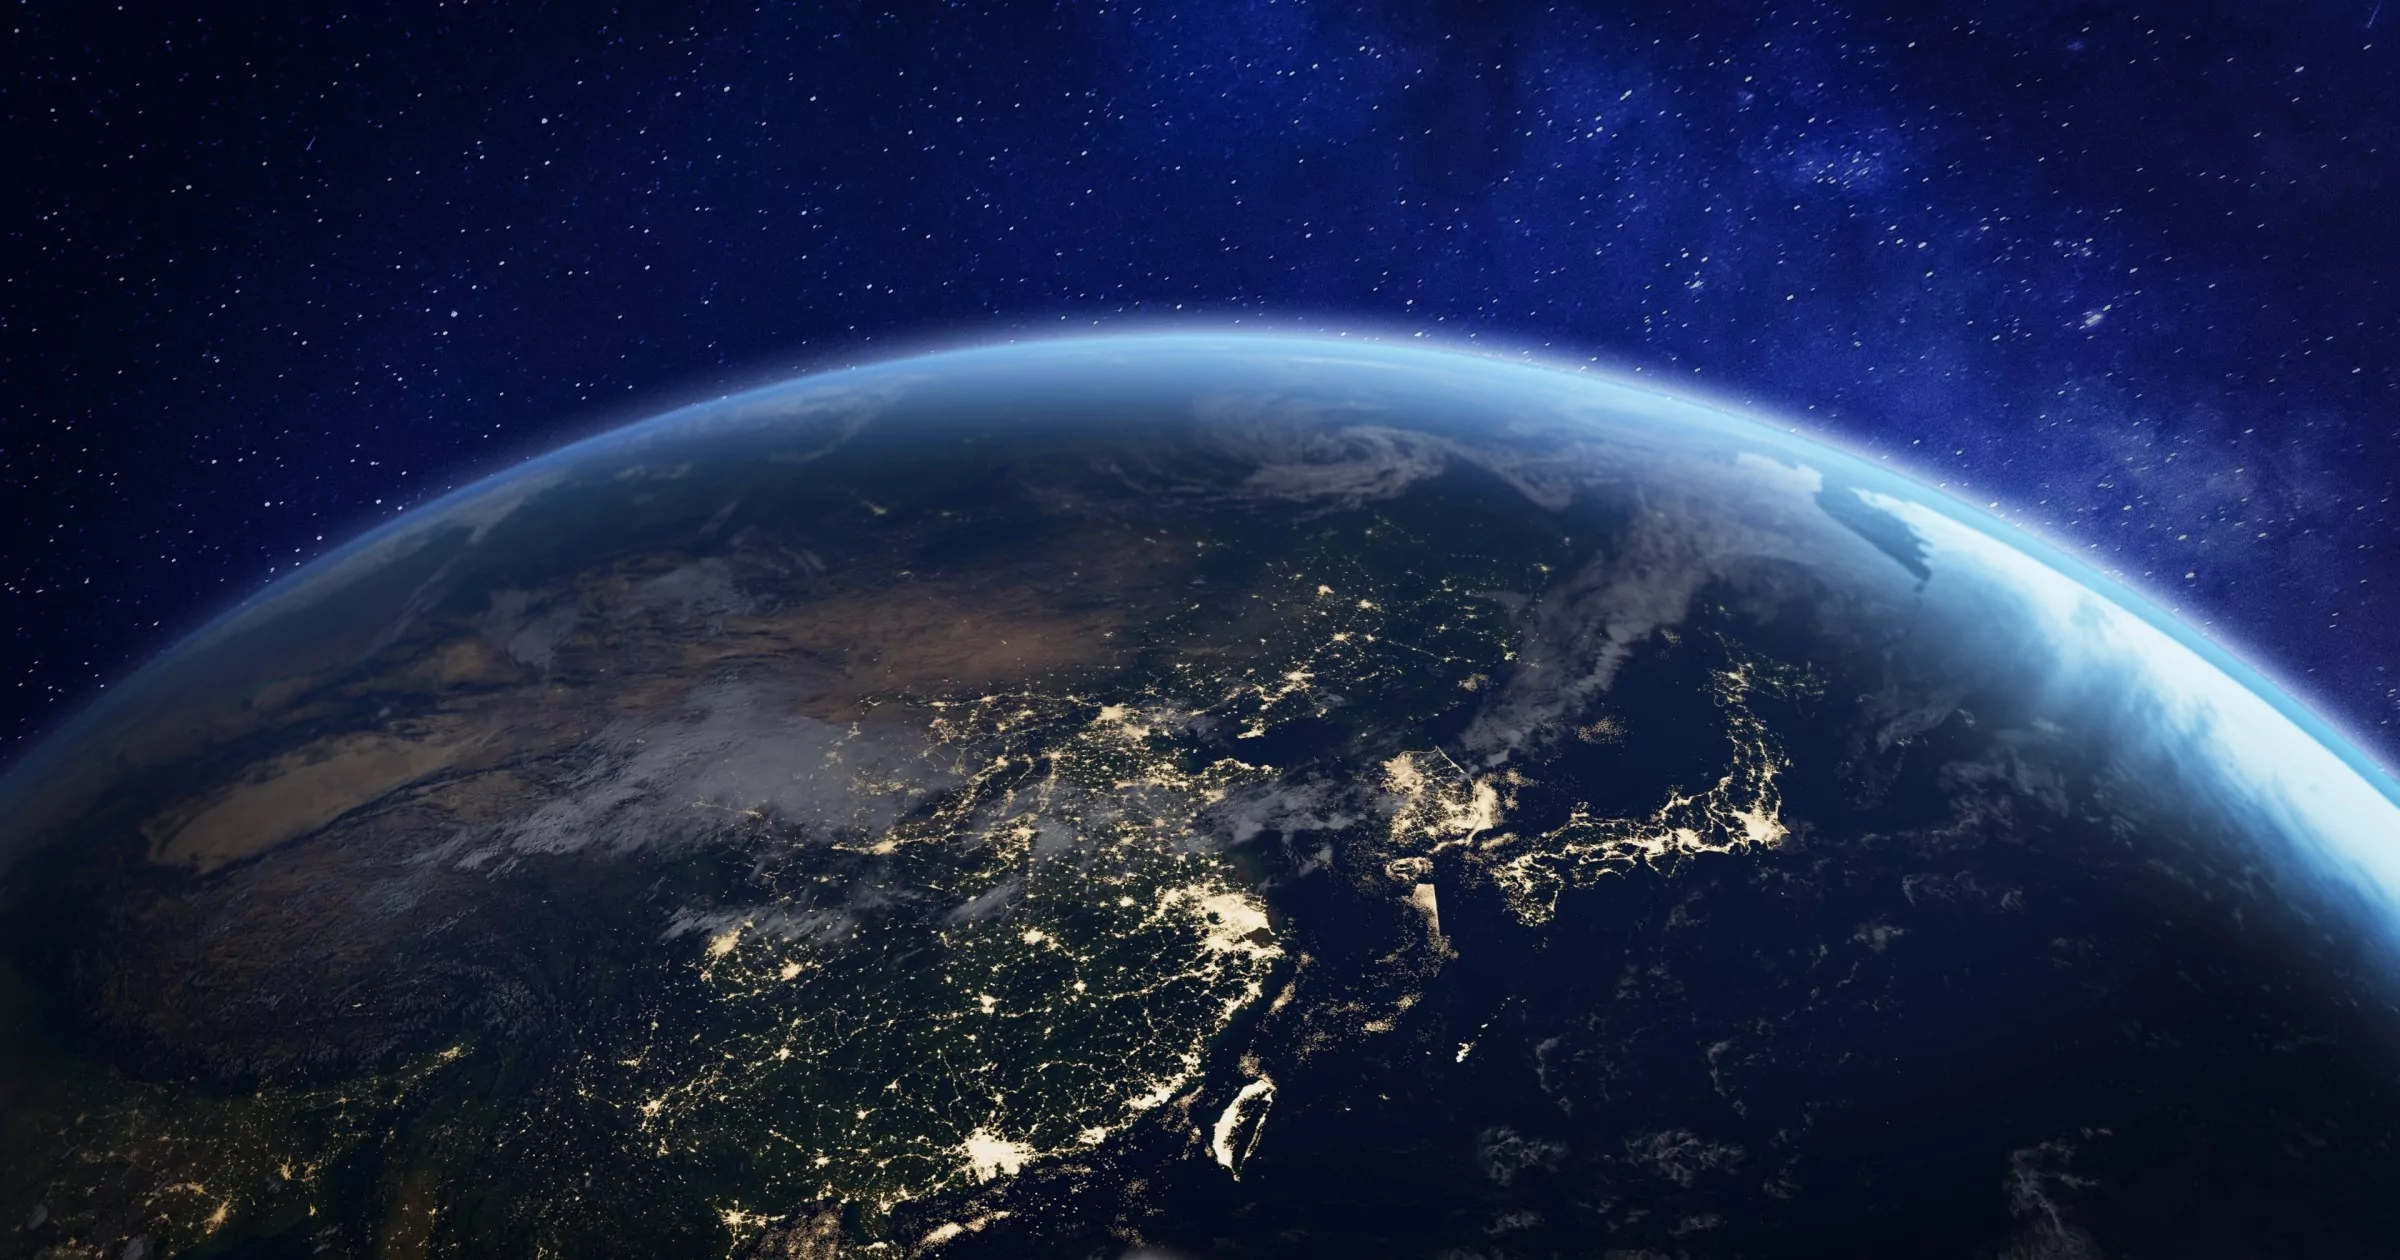 Azië 's nachts vanuit de ruimte met stadslichten die menselijke activiteit tonen in China, Japan, Zuid-Korea, Taiwan en andere landen, 3D-weergave van de planeet Aarde, elementen van Nasa